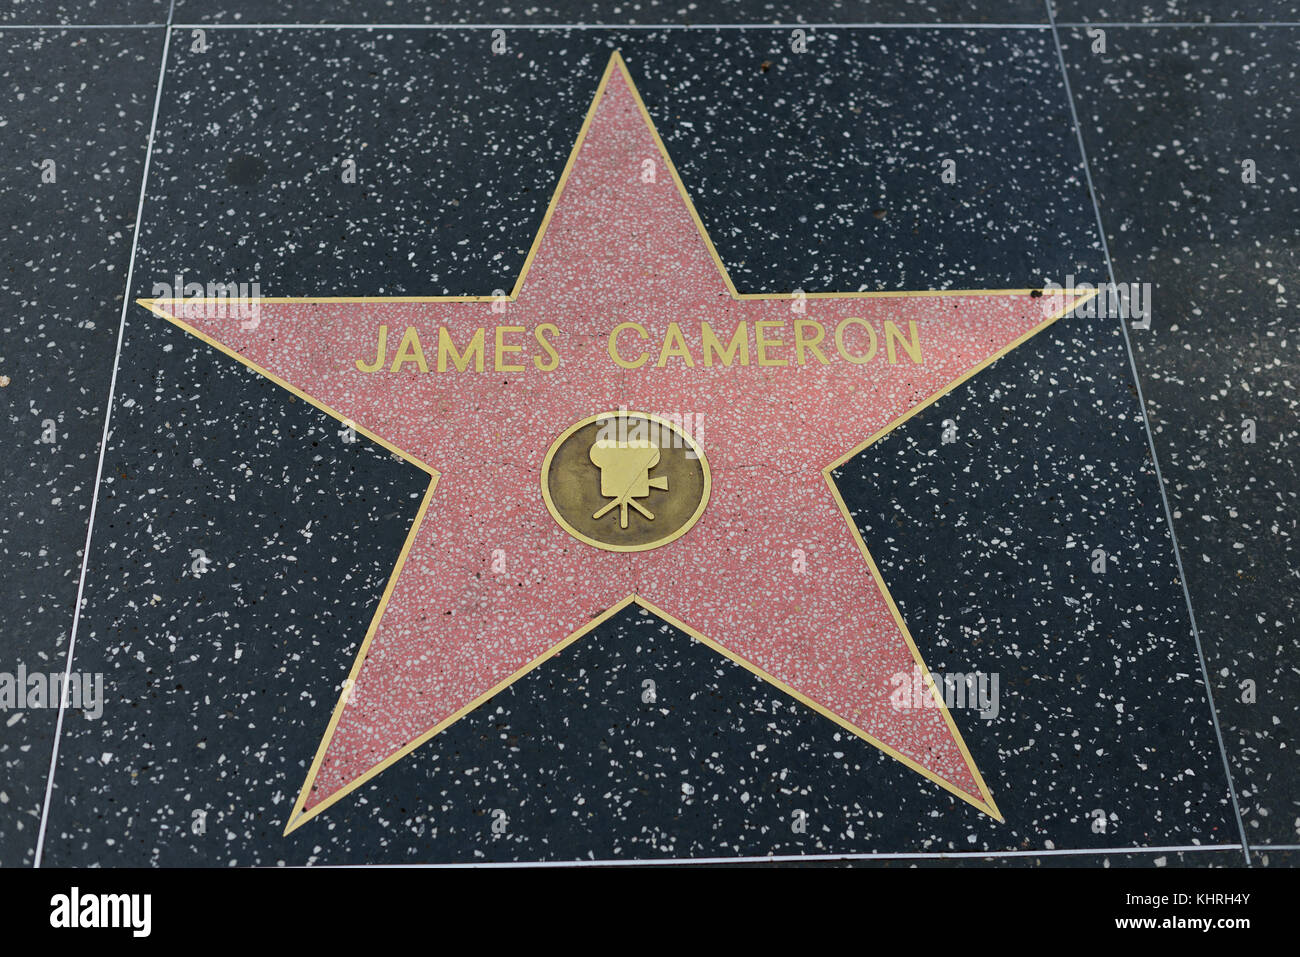 HOLLYWOOD, CA - DEZEMBER 06: James Cameron Star auf dem Hollywood Walk of Fame in Hollywood, Kalifornien am 6. Dezember 2016. Stockfoto